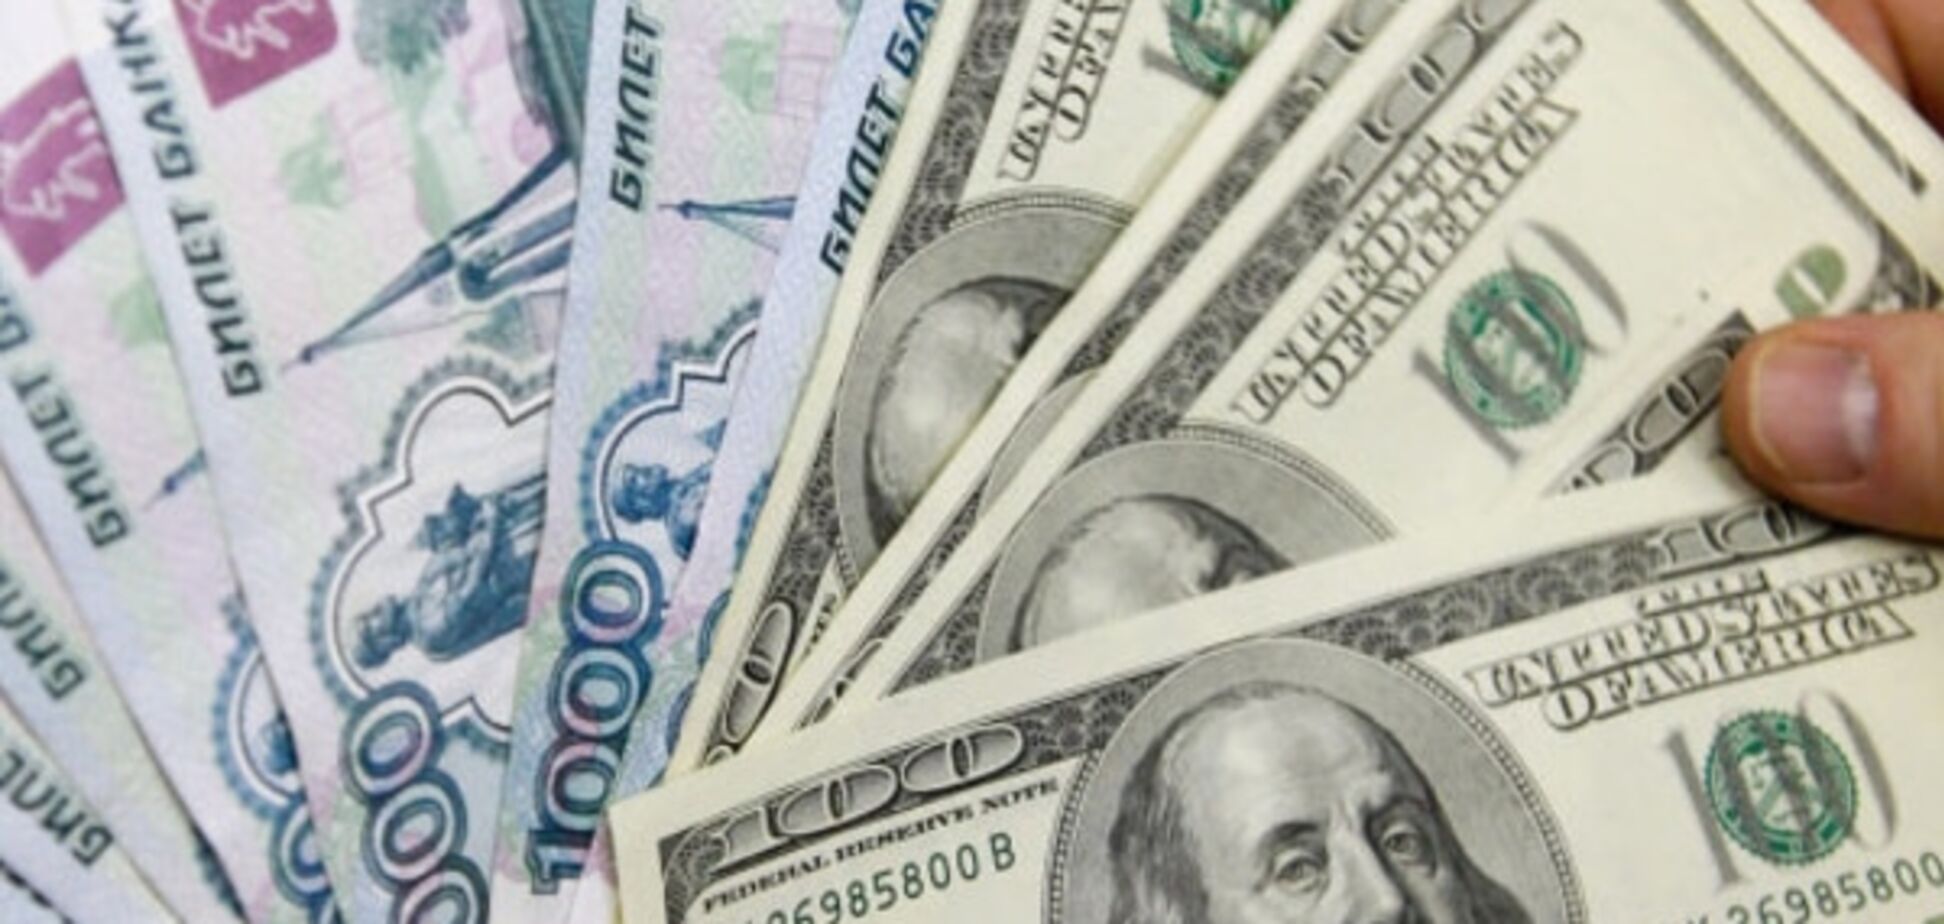 Противостояние доллар-рубль. Чего ждать